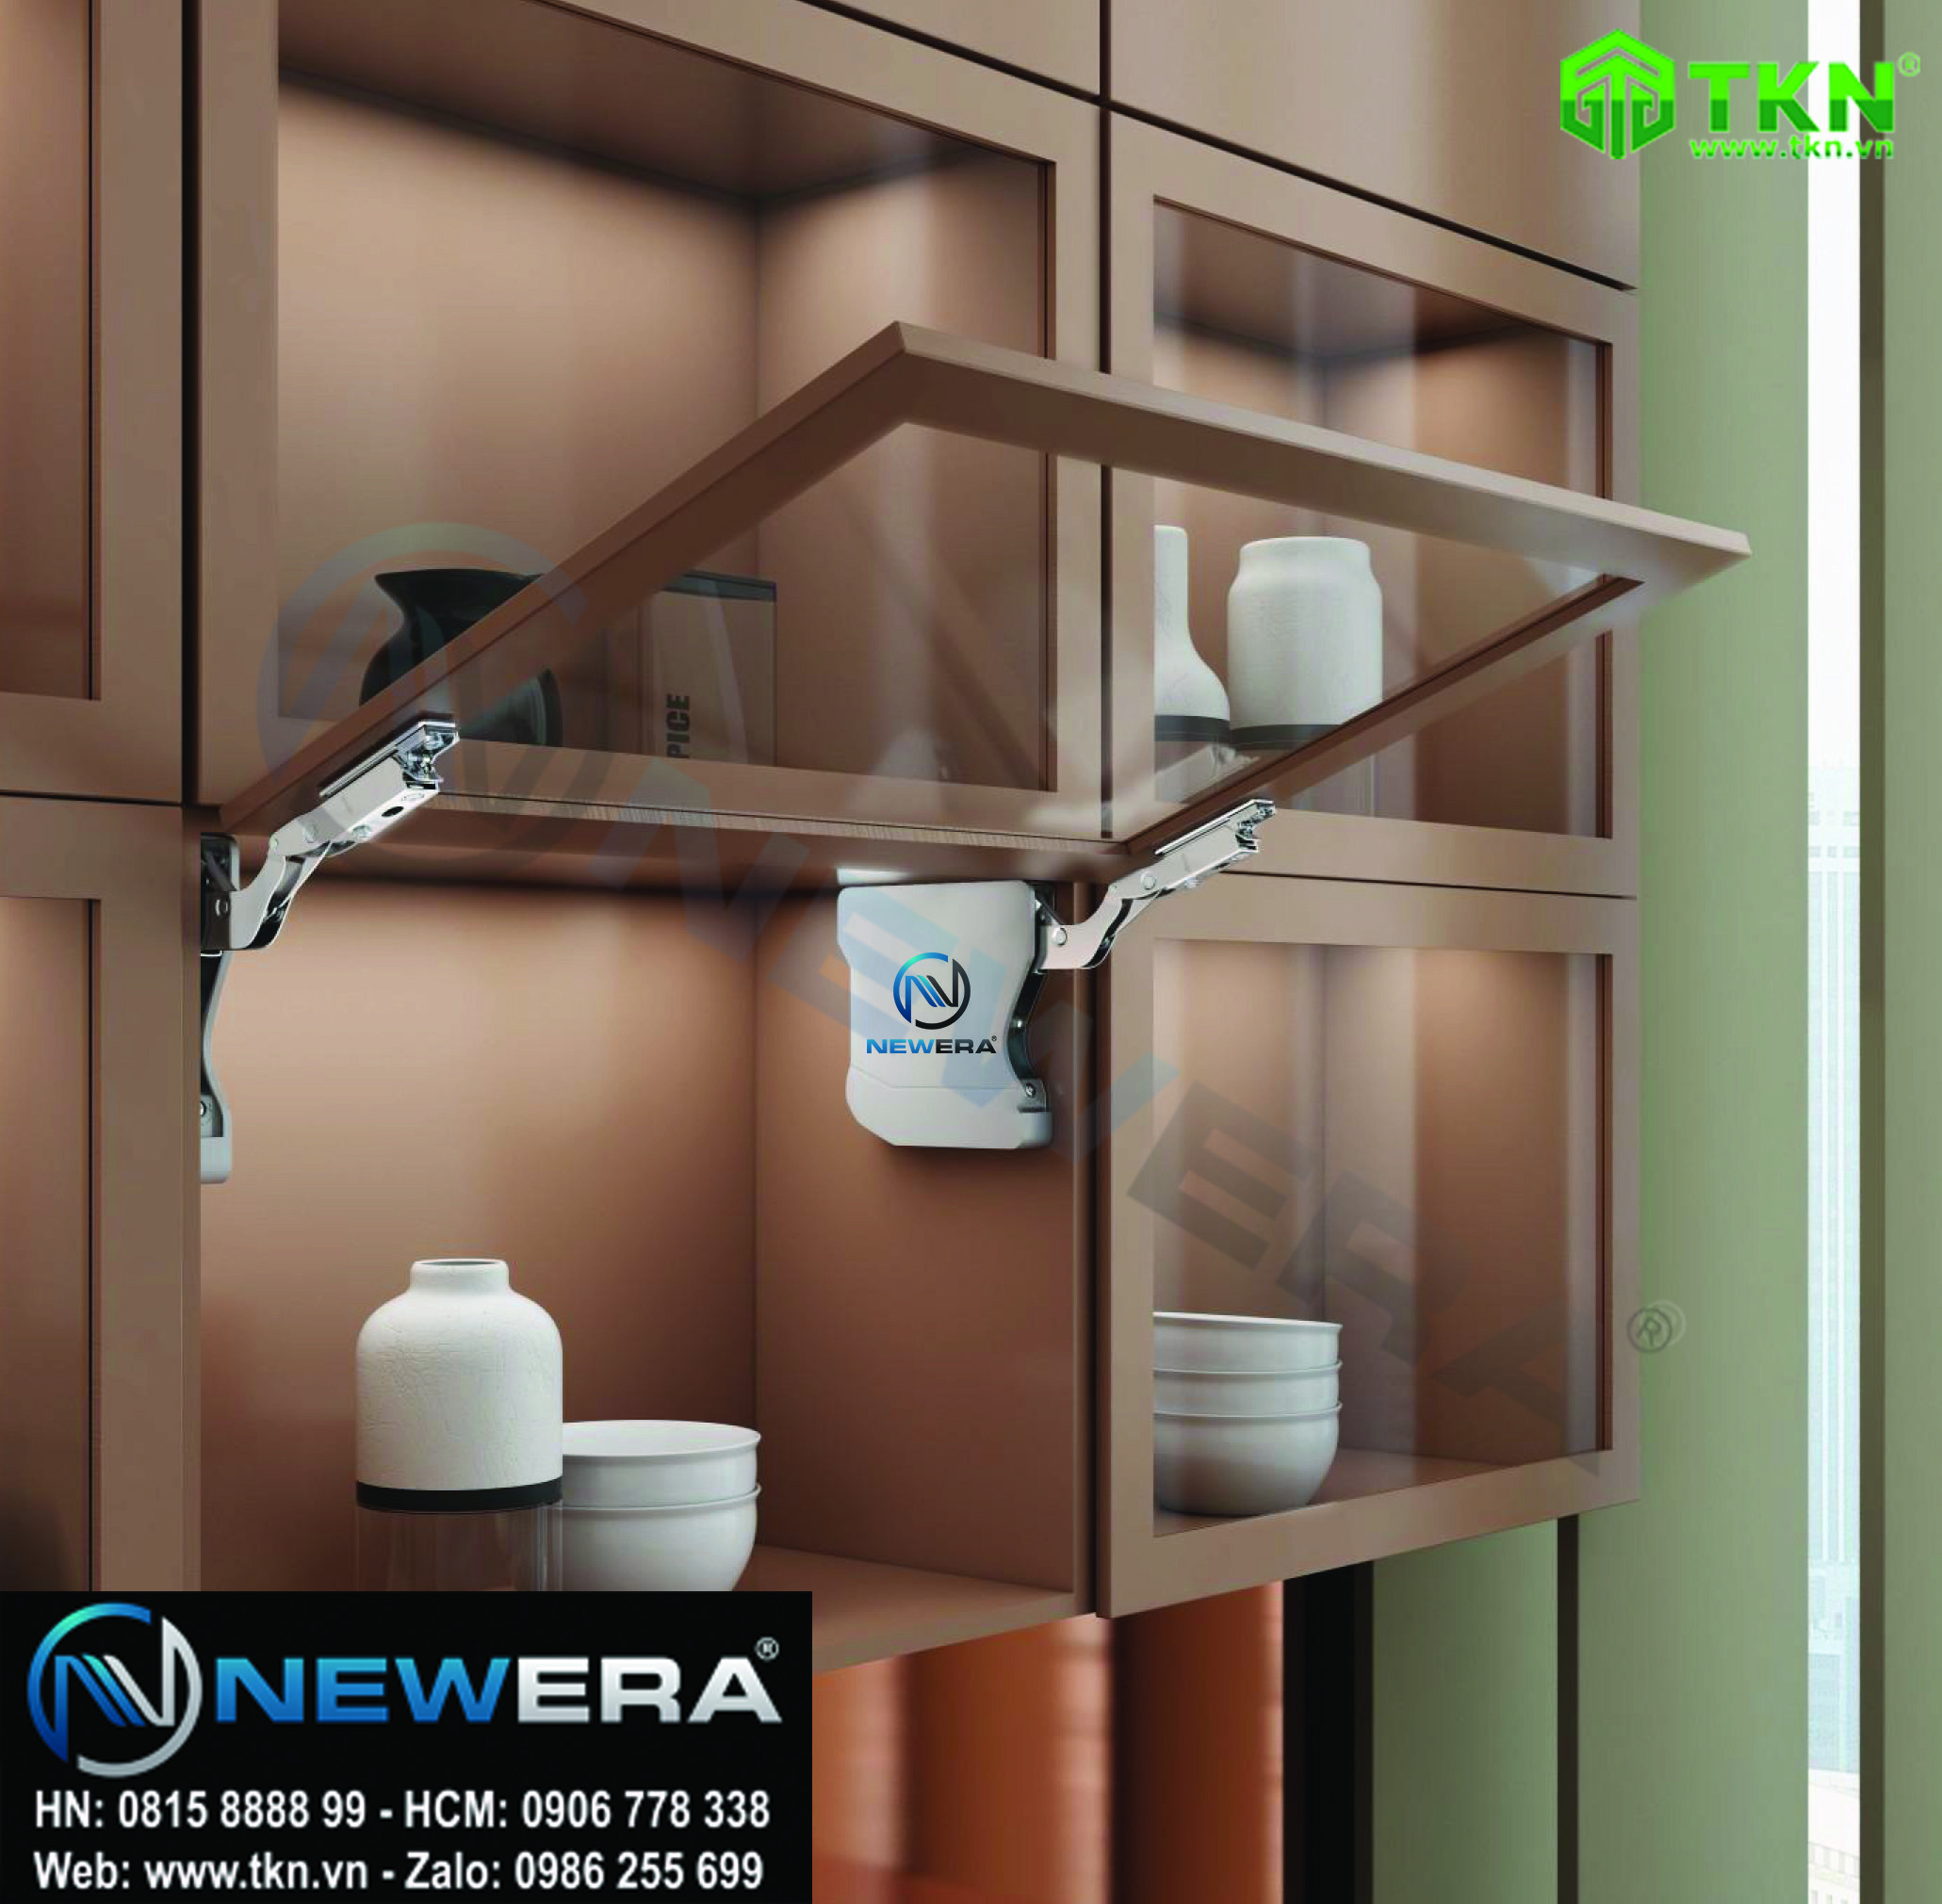 Tay nâng tủ bếp đơn giảm chấn NewEra NE99.T76. Lý tưởng cho tủ bếp và tủ trang trí